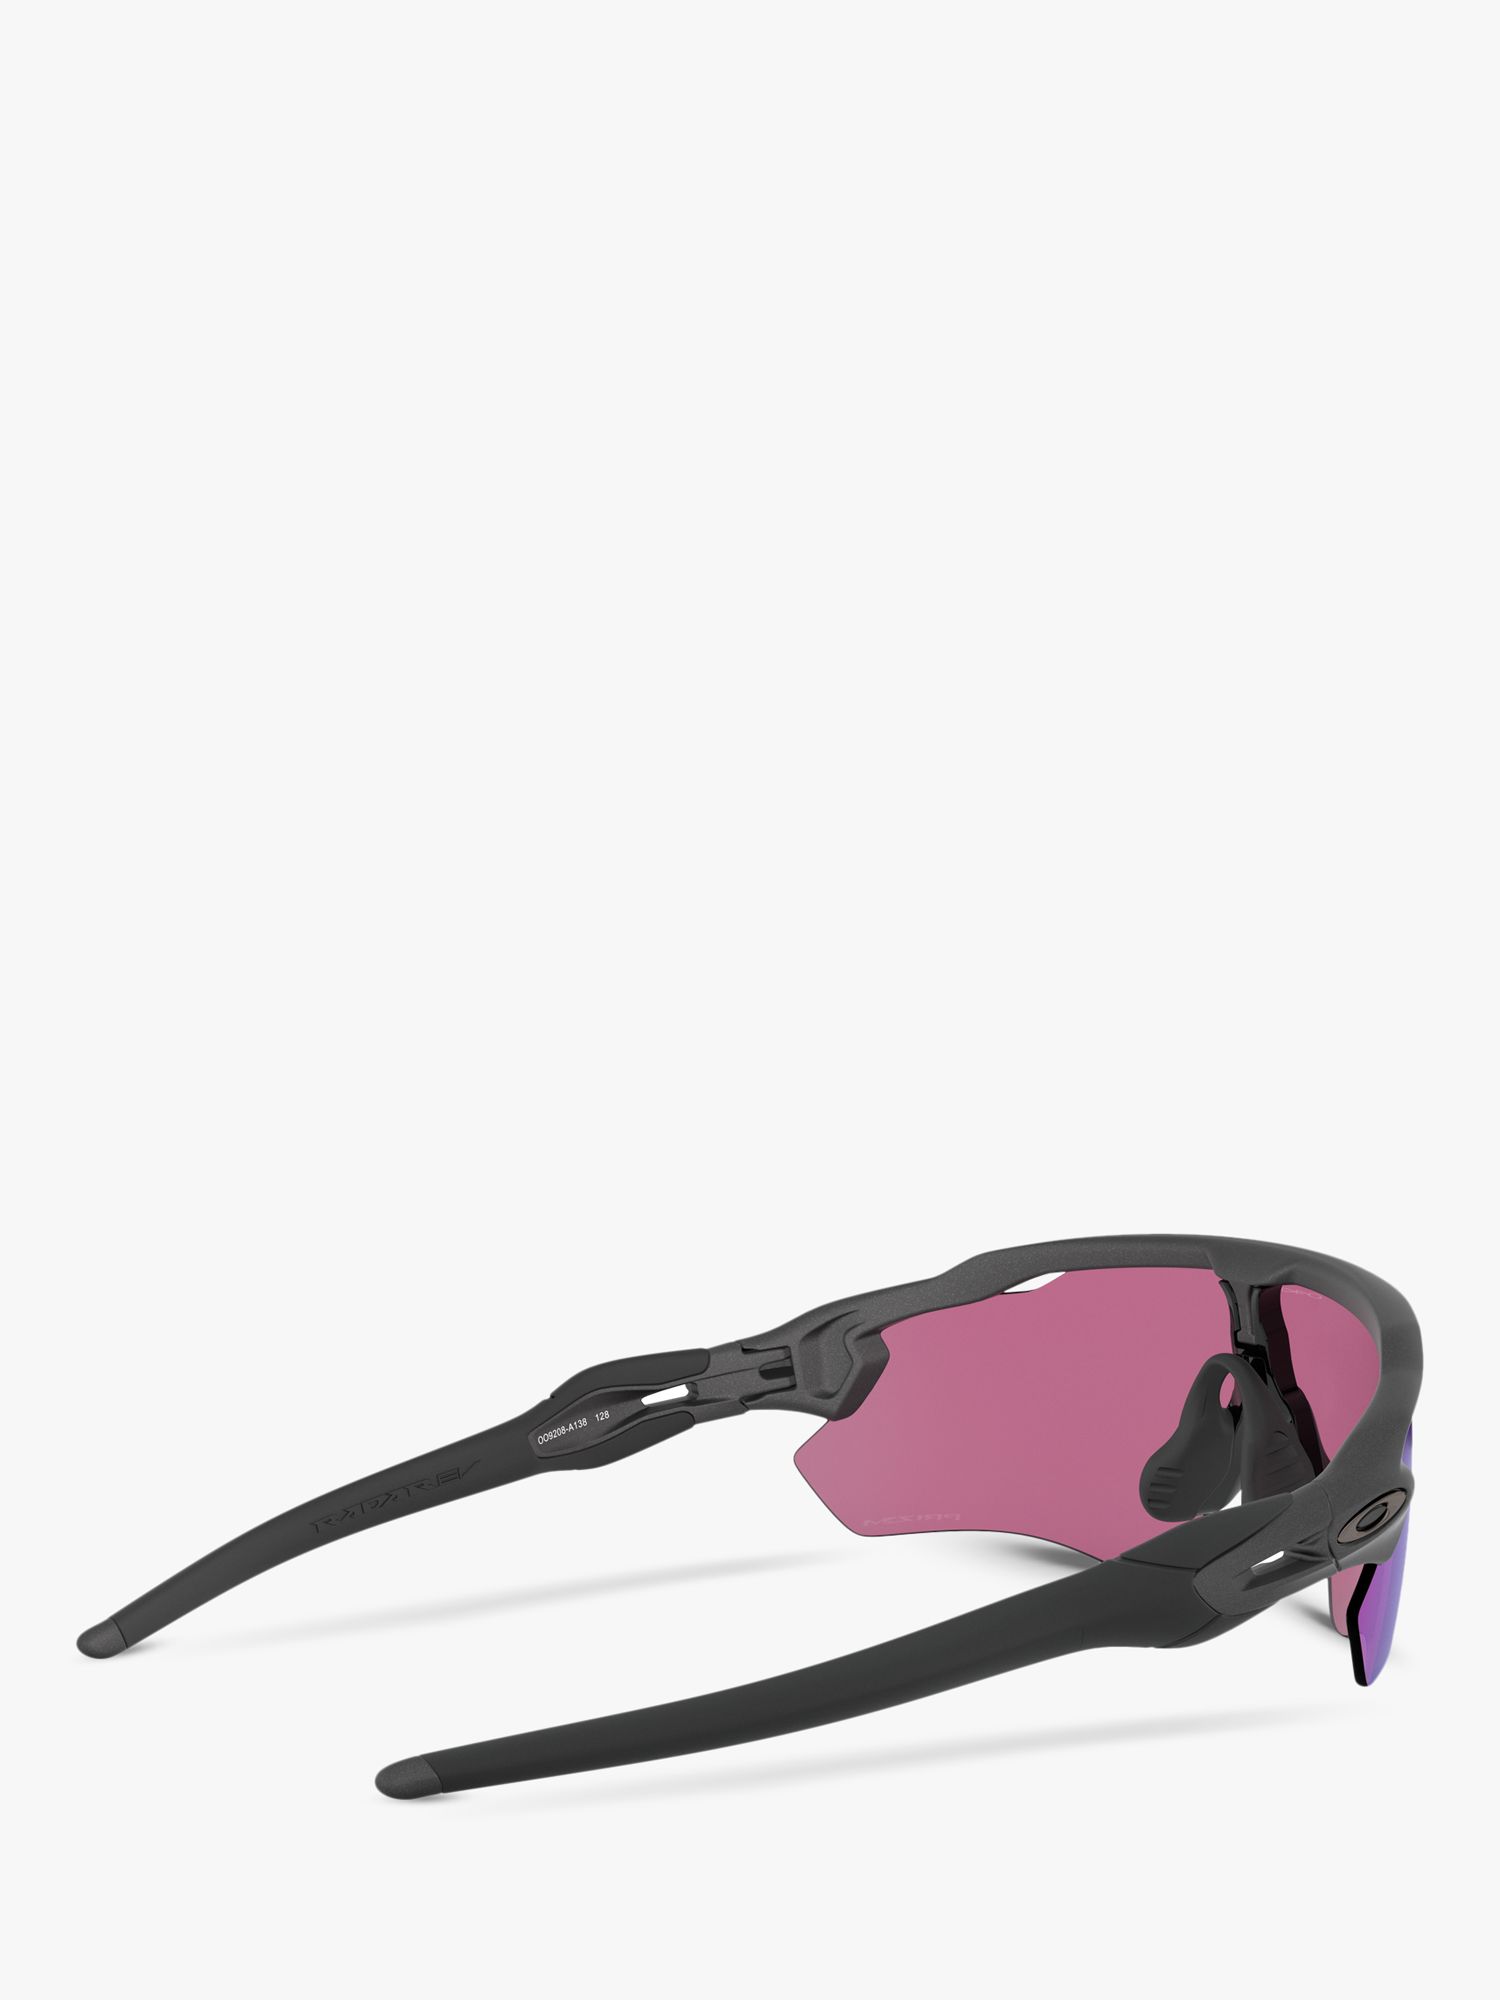 Oakley OO9208 Men's Radar EV Path Wrap Sunglasses, Steel/Mirror